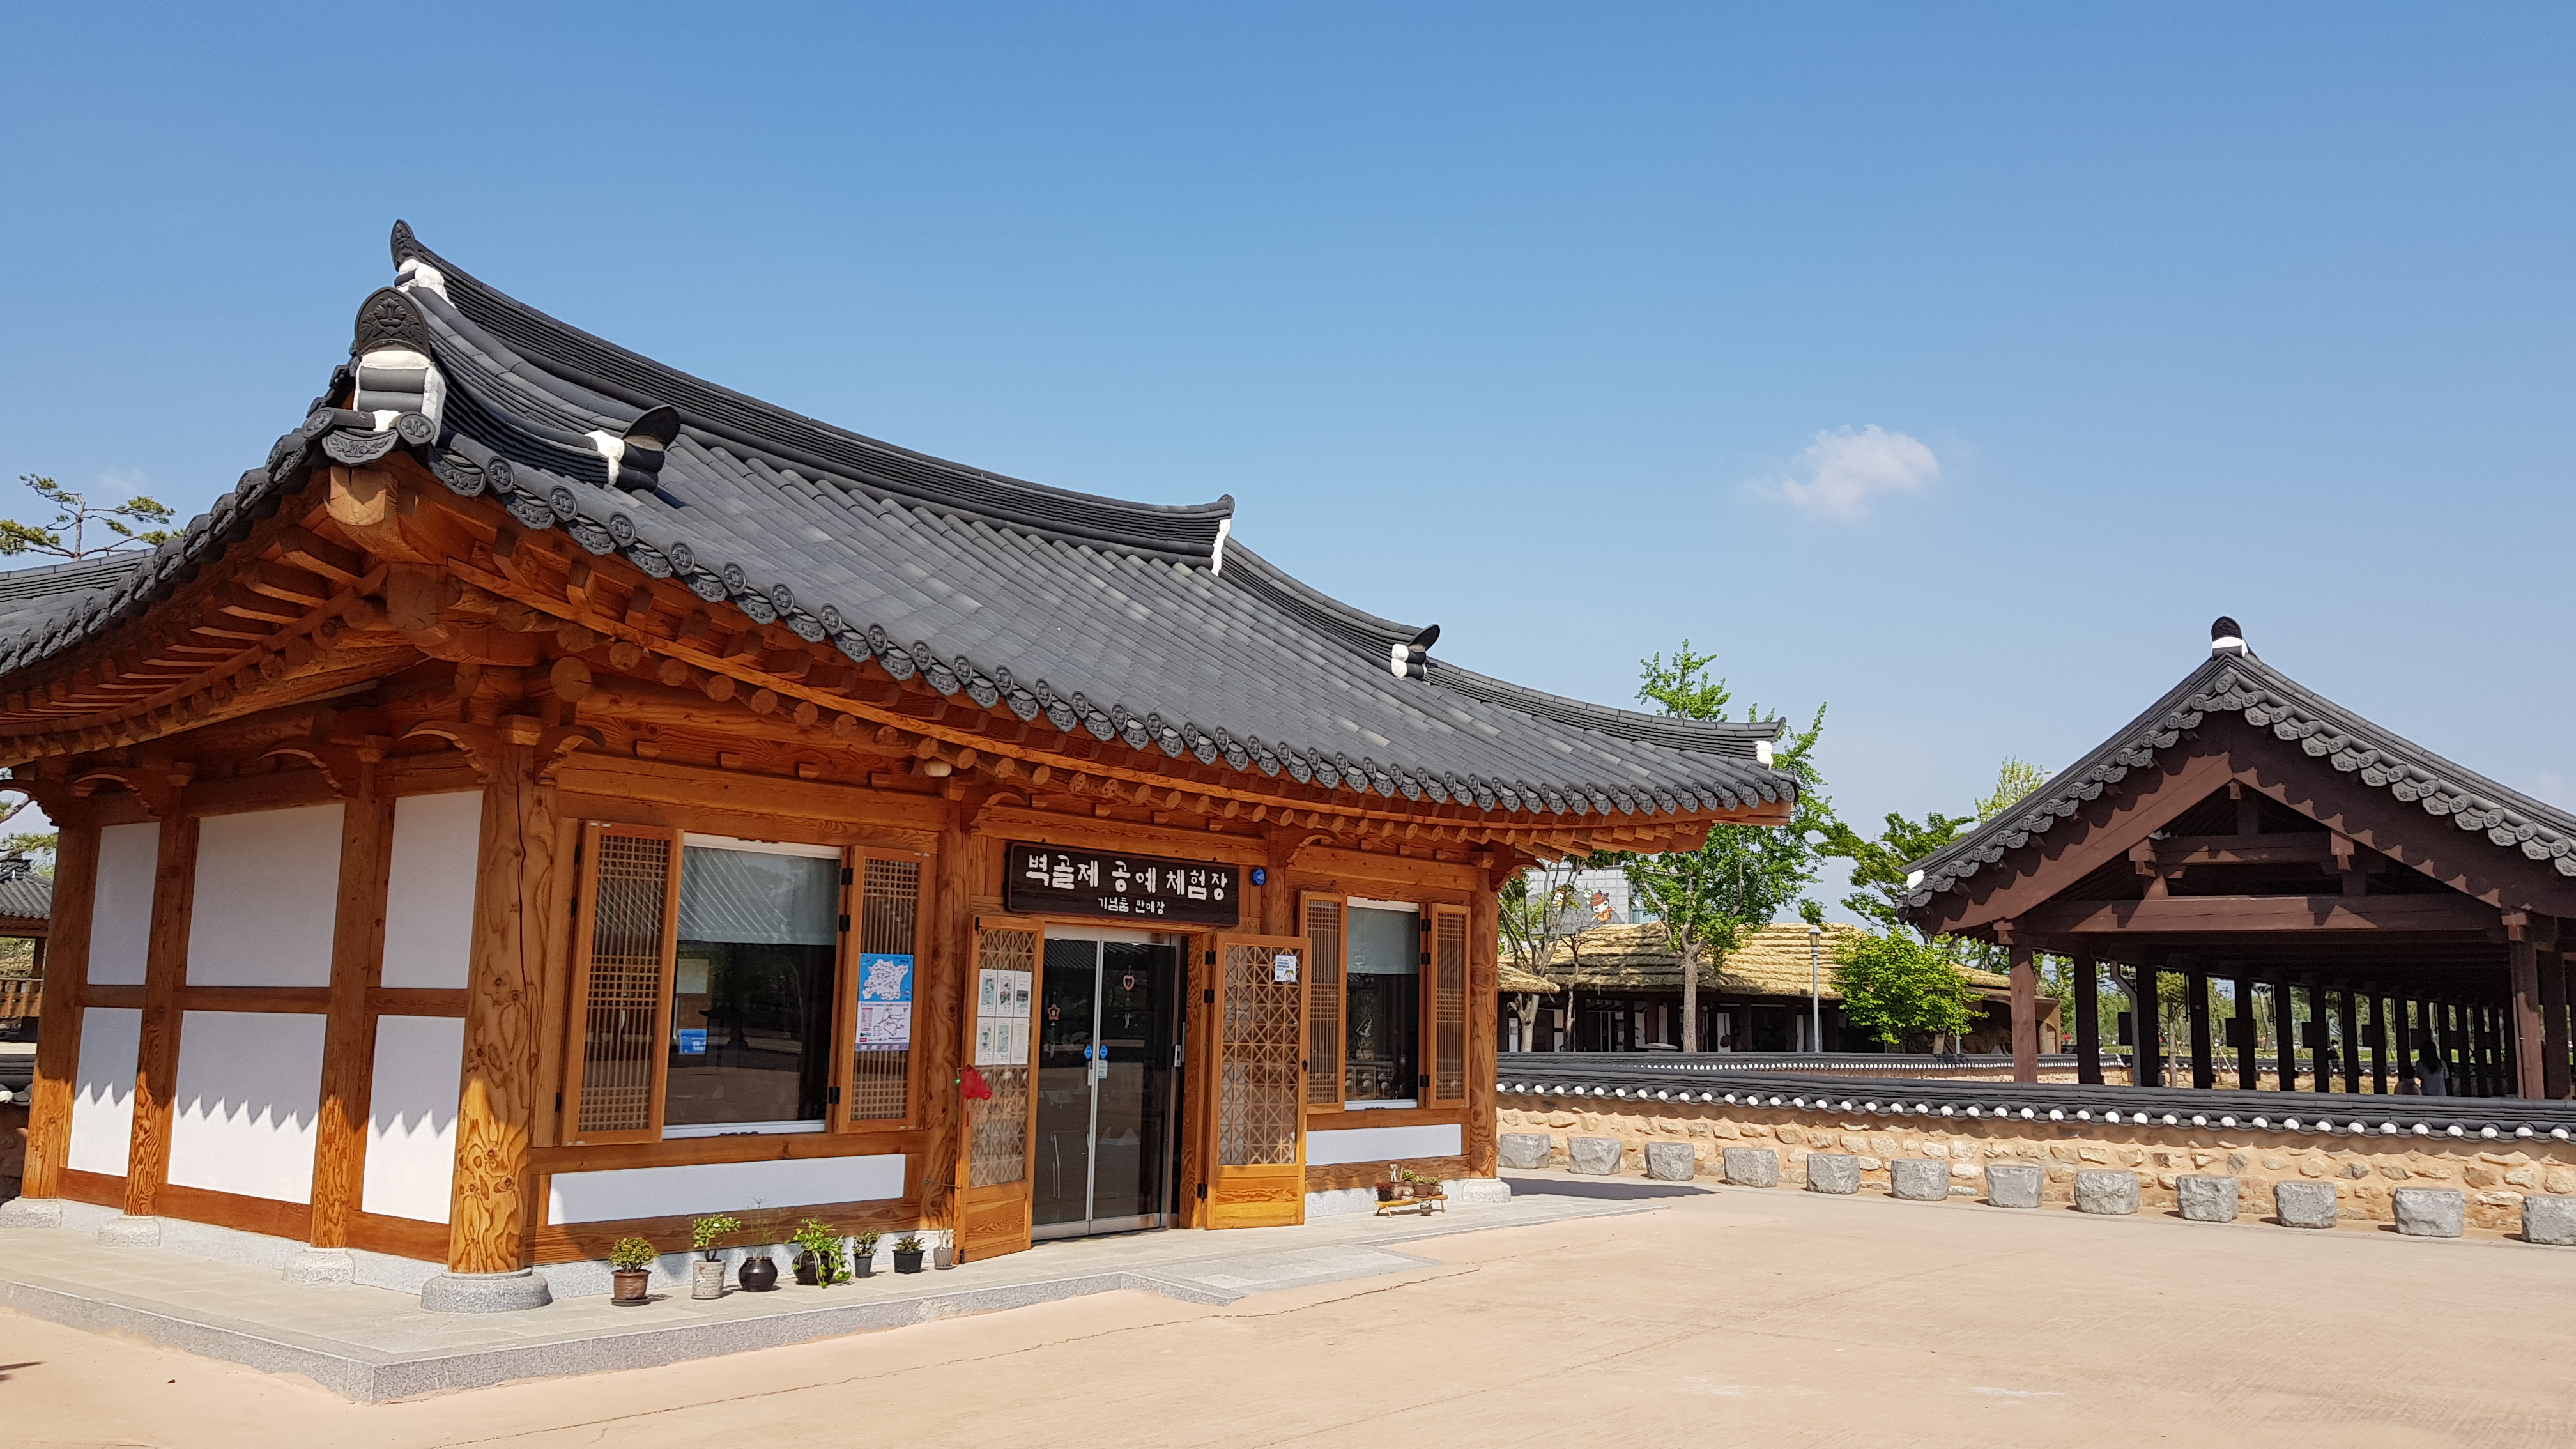 공예 체험장 등 안쪽 건물은 모두 한옥으로 한국의 옛 정취가 느껴진다.